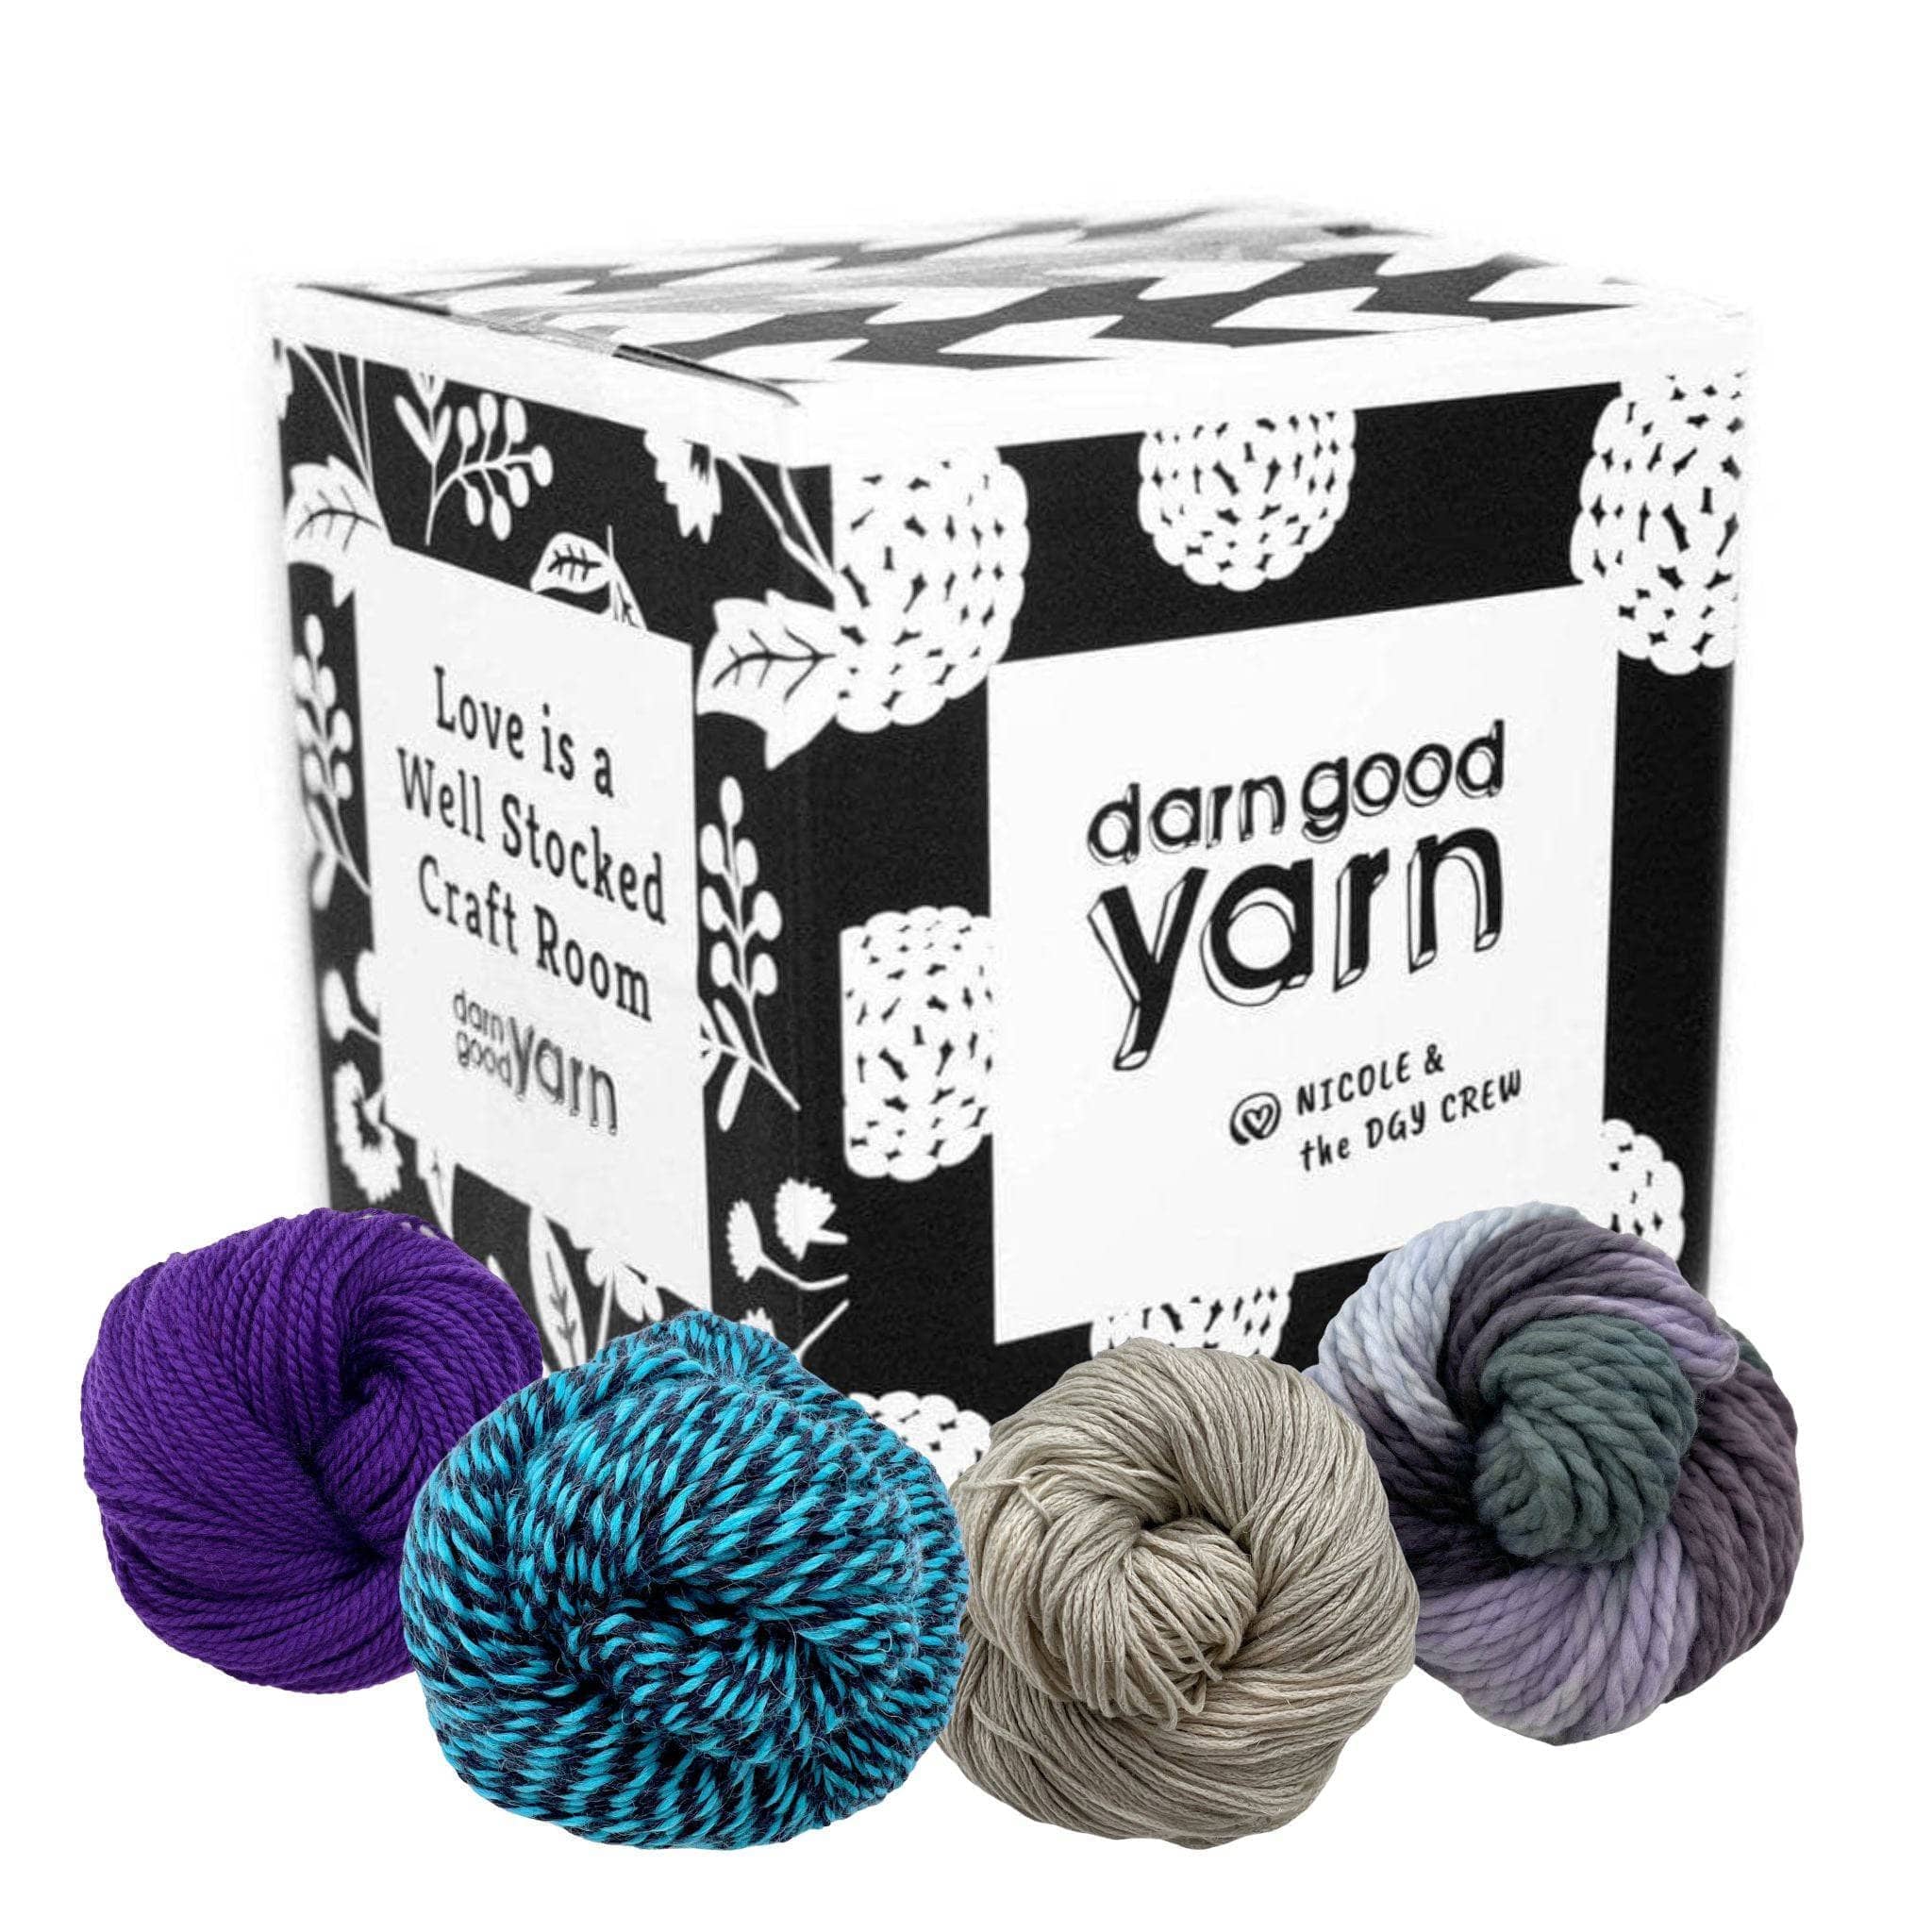 Super Chunky Yarn Crochet Yarn Knitting Yarn Super Bulky -  Denmark